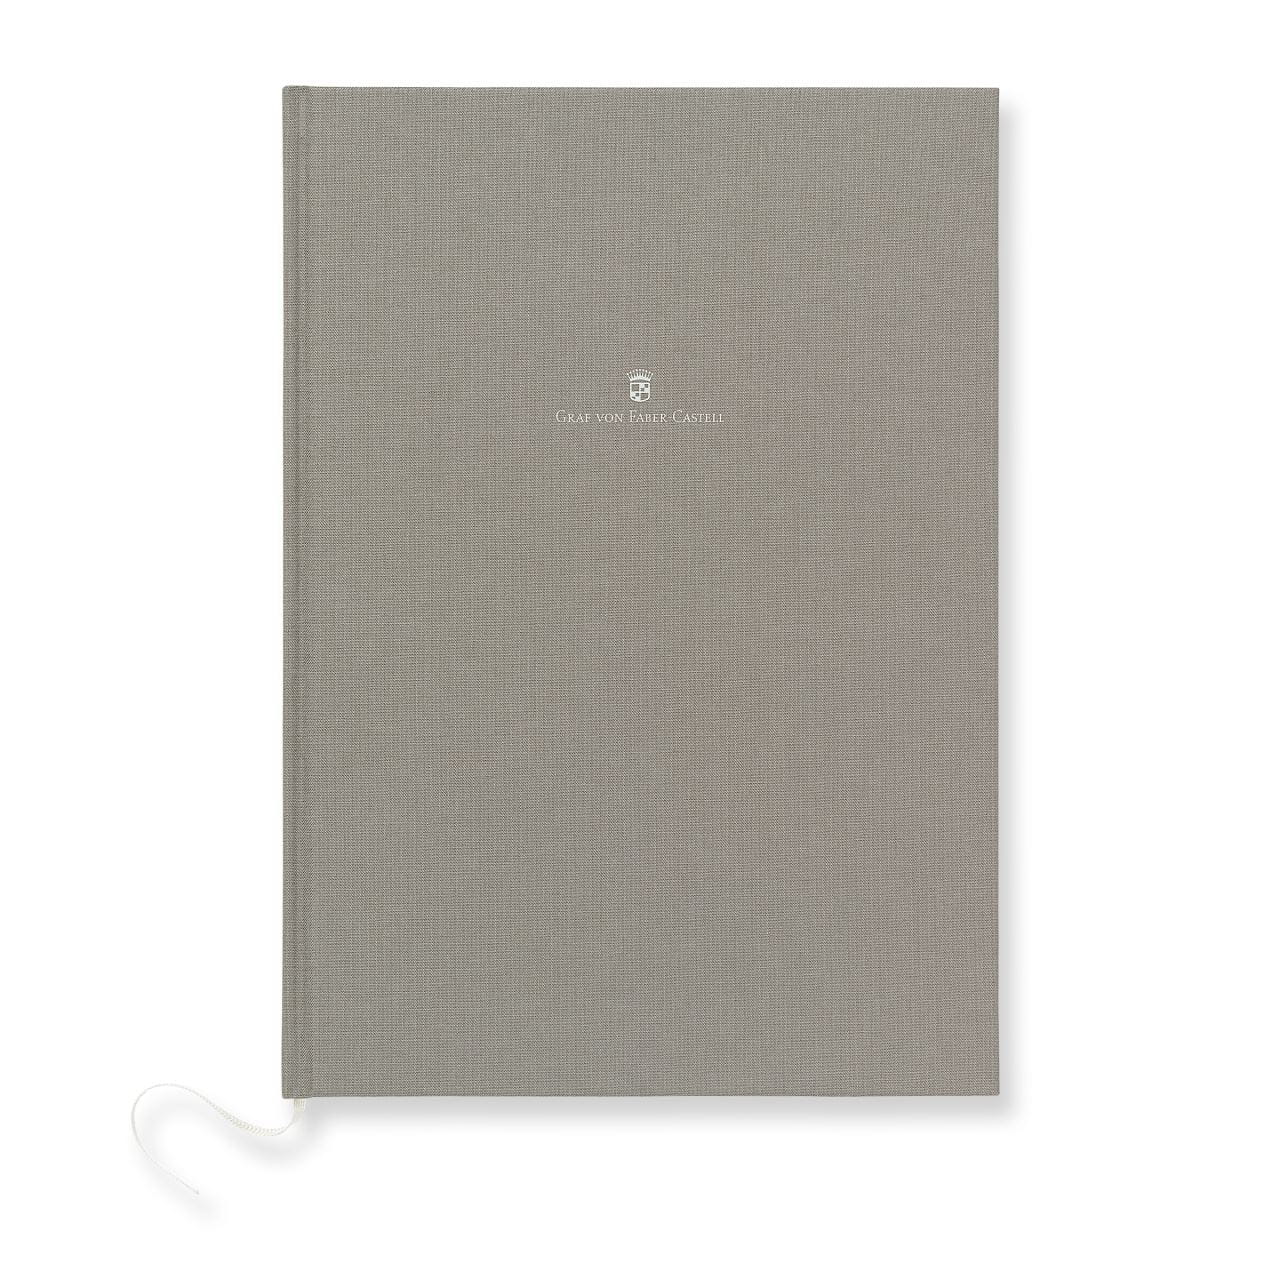 Graf-von-Faber-Castell - Linen-bound book A4 Stone Grey